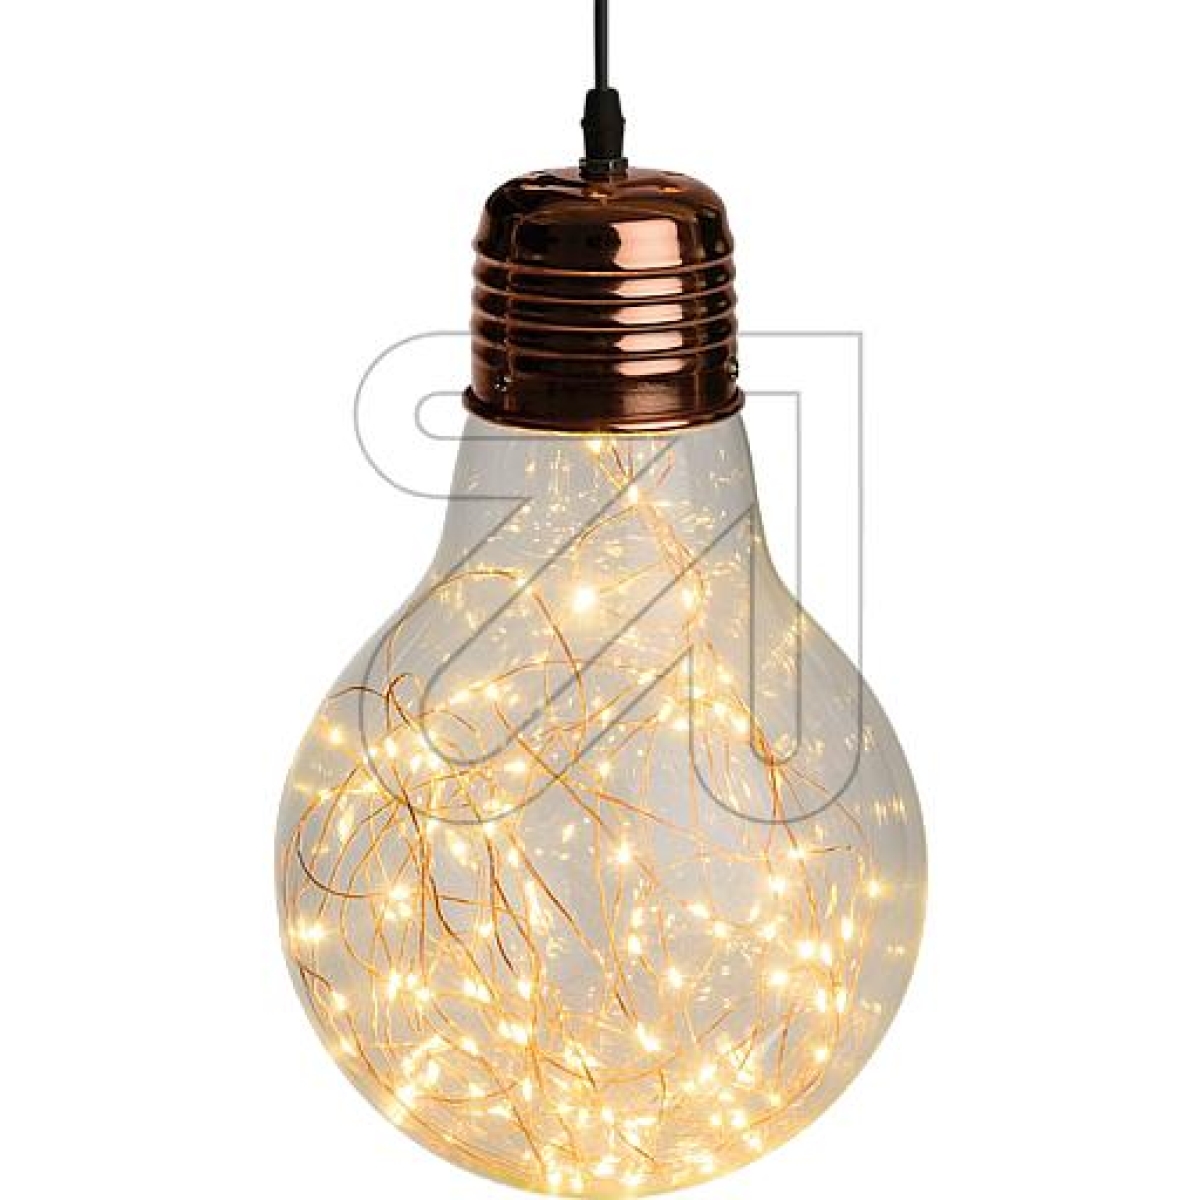 LUXALED decorative light bulb 34cm 39018 100 LEDs Ø 21.5x34cm copper